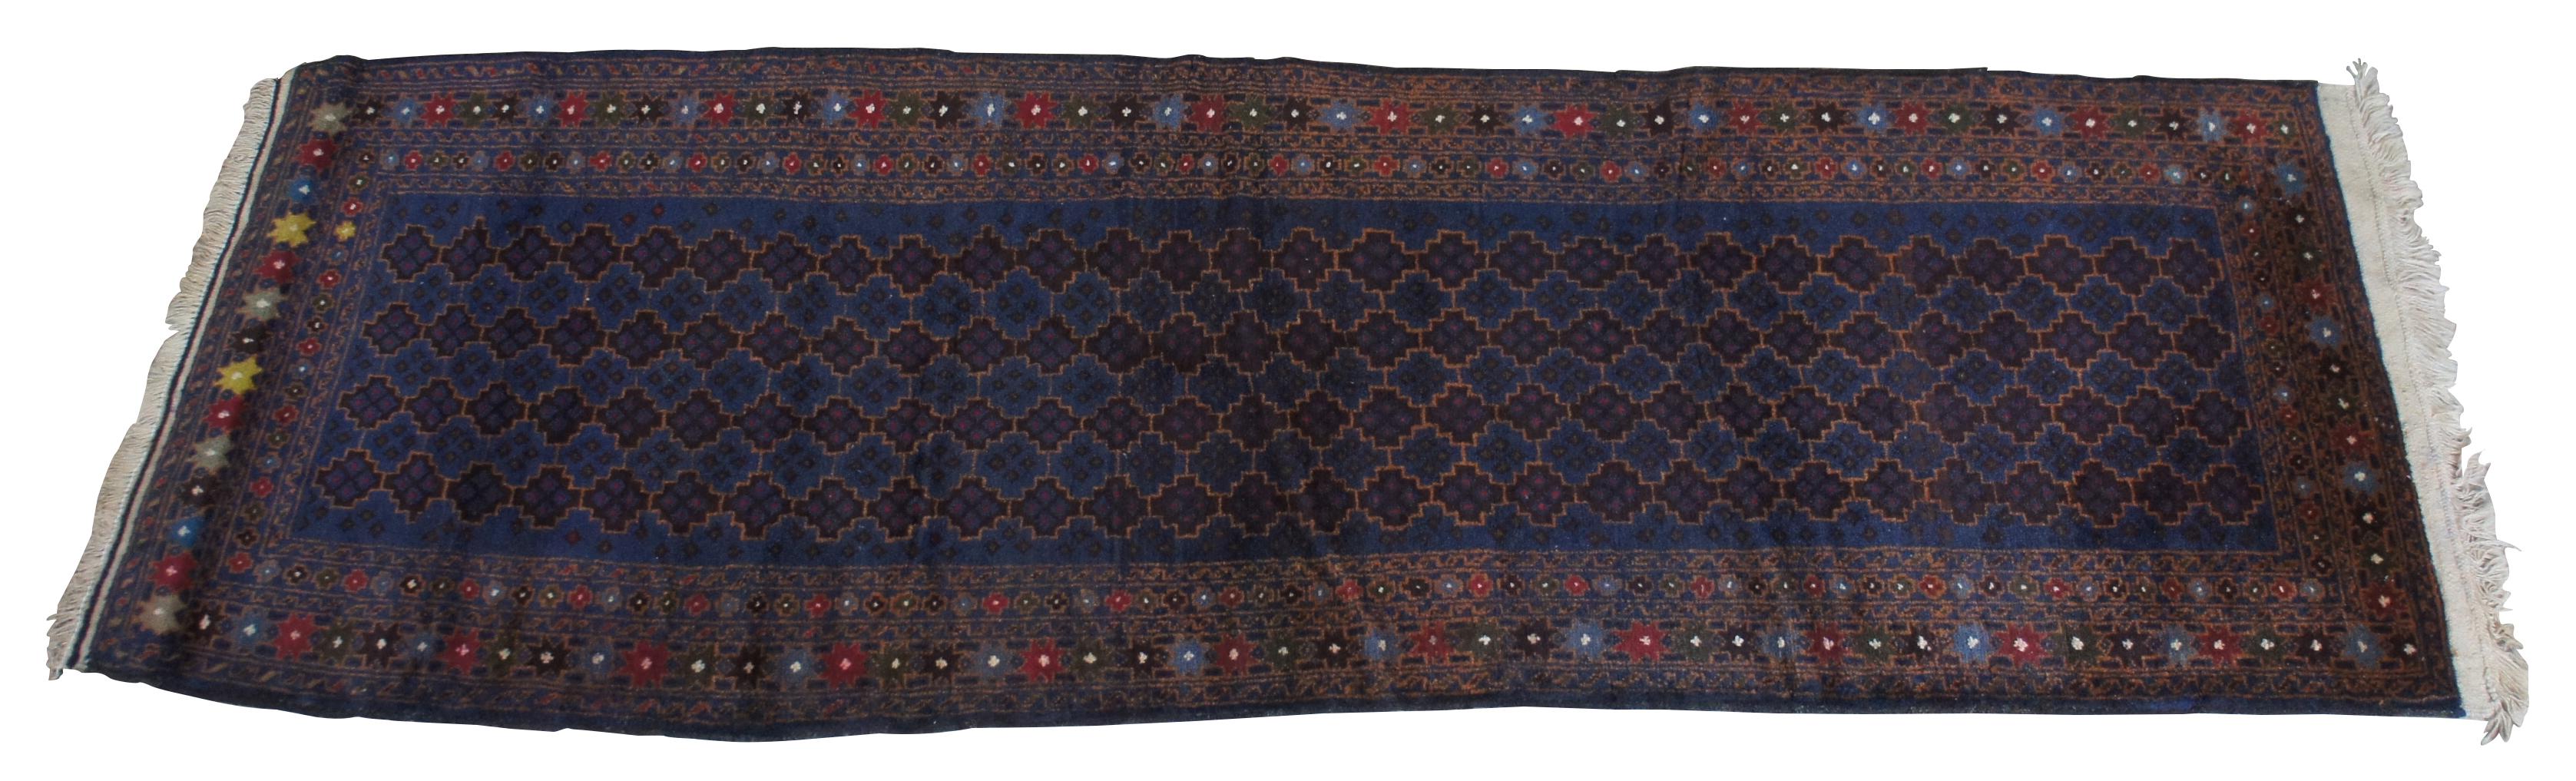 Nomadenteppich aus Wolle aus der Mitte des 20. Jahrhunderts von Kazak aus Afghanistan. Mit einem blauen Feld mit geometrischem Muster und einer bunten Umrandung aus 8 Sternen.
  